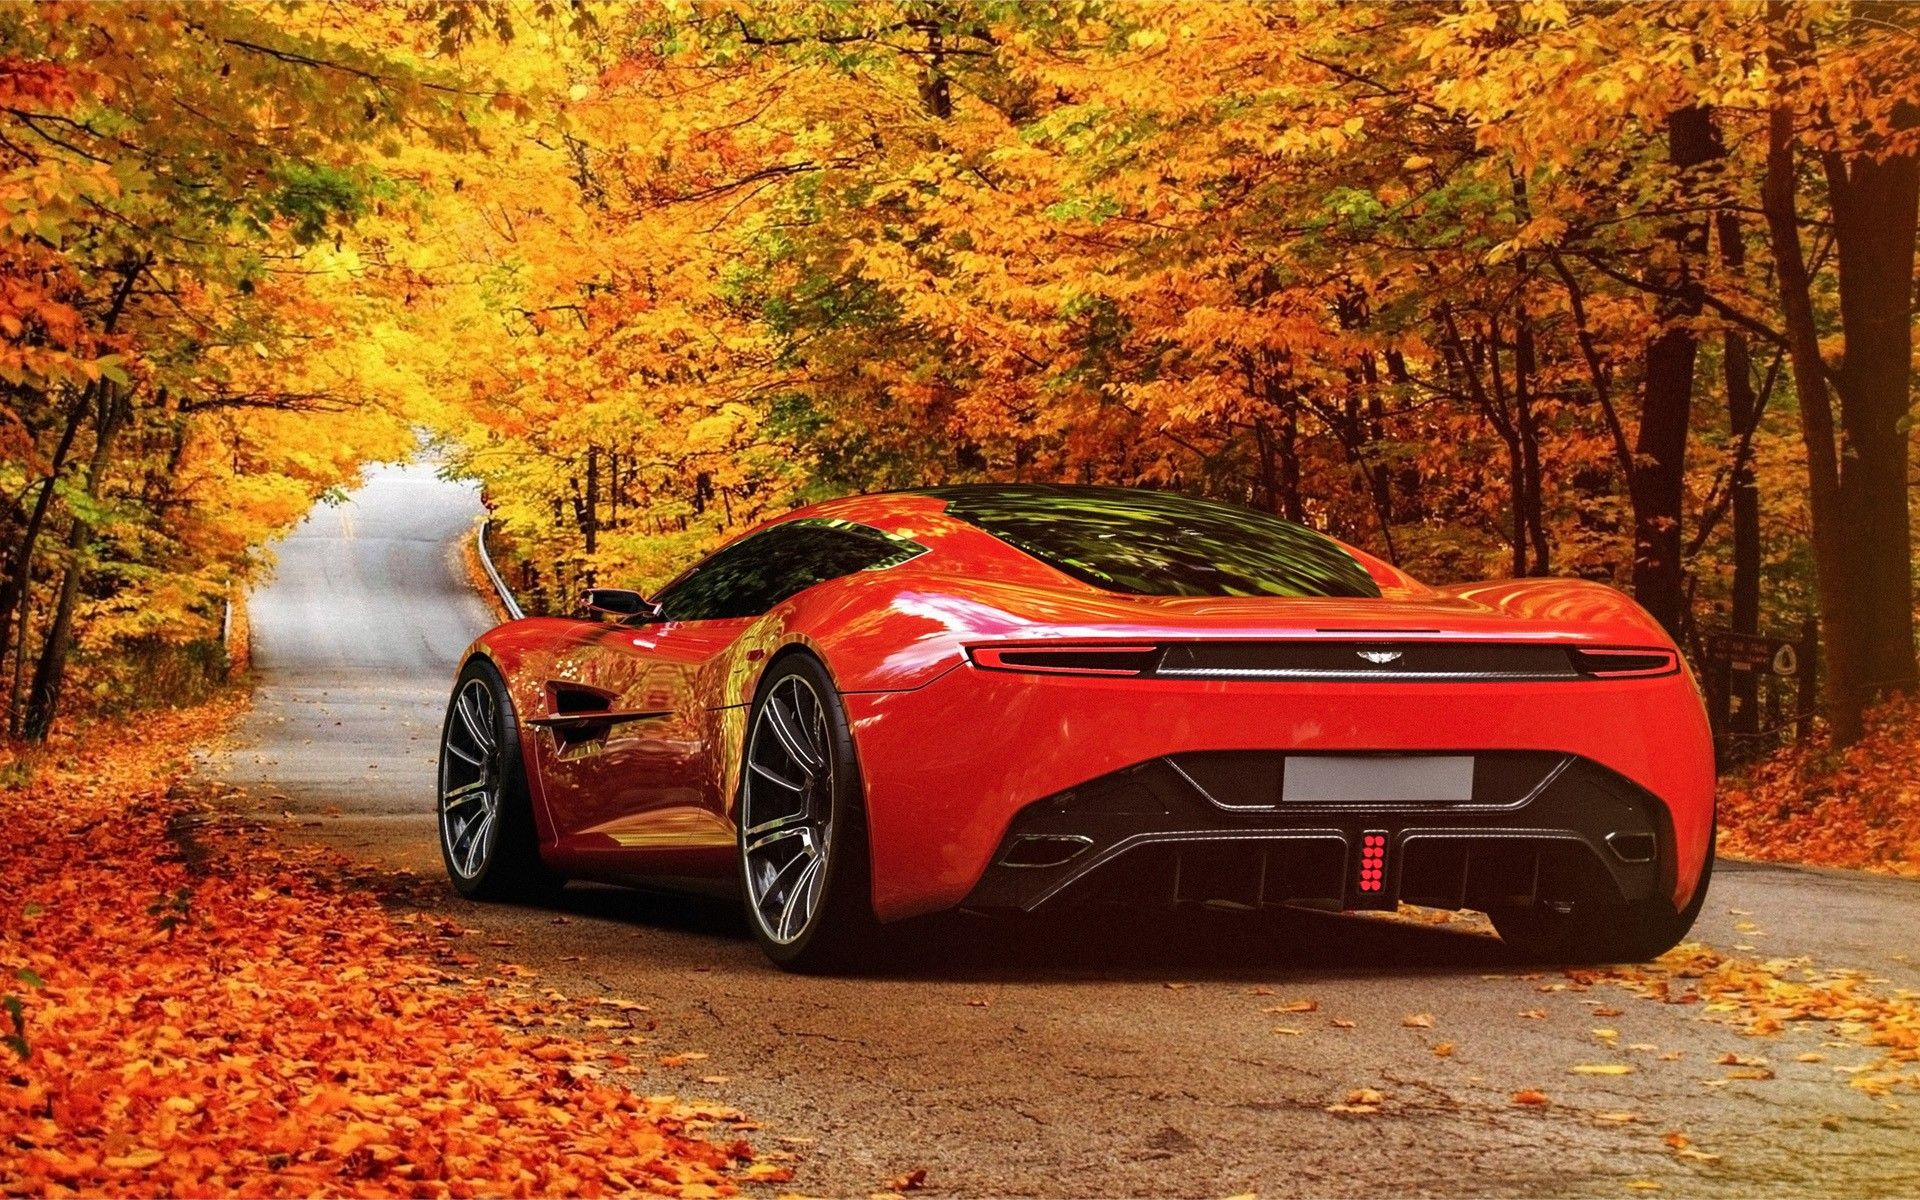 Aston Martin in Autumn Scenery wallpaper. Aston Martin in Autumn Scenery